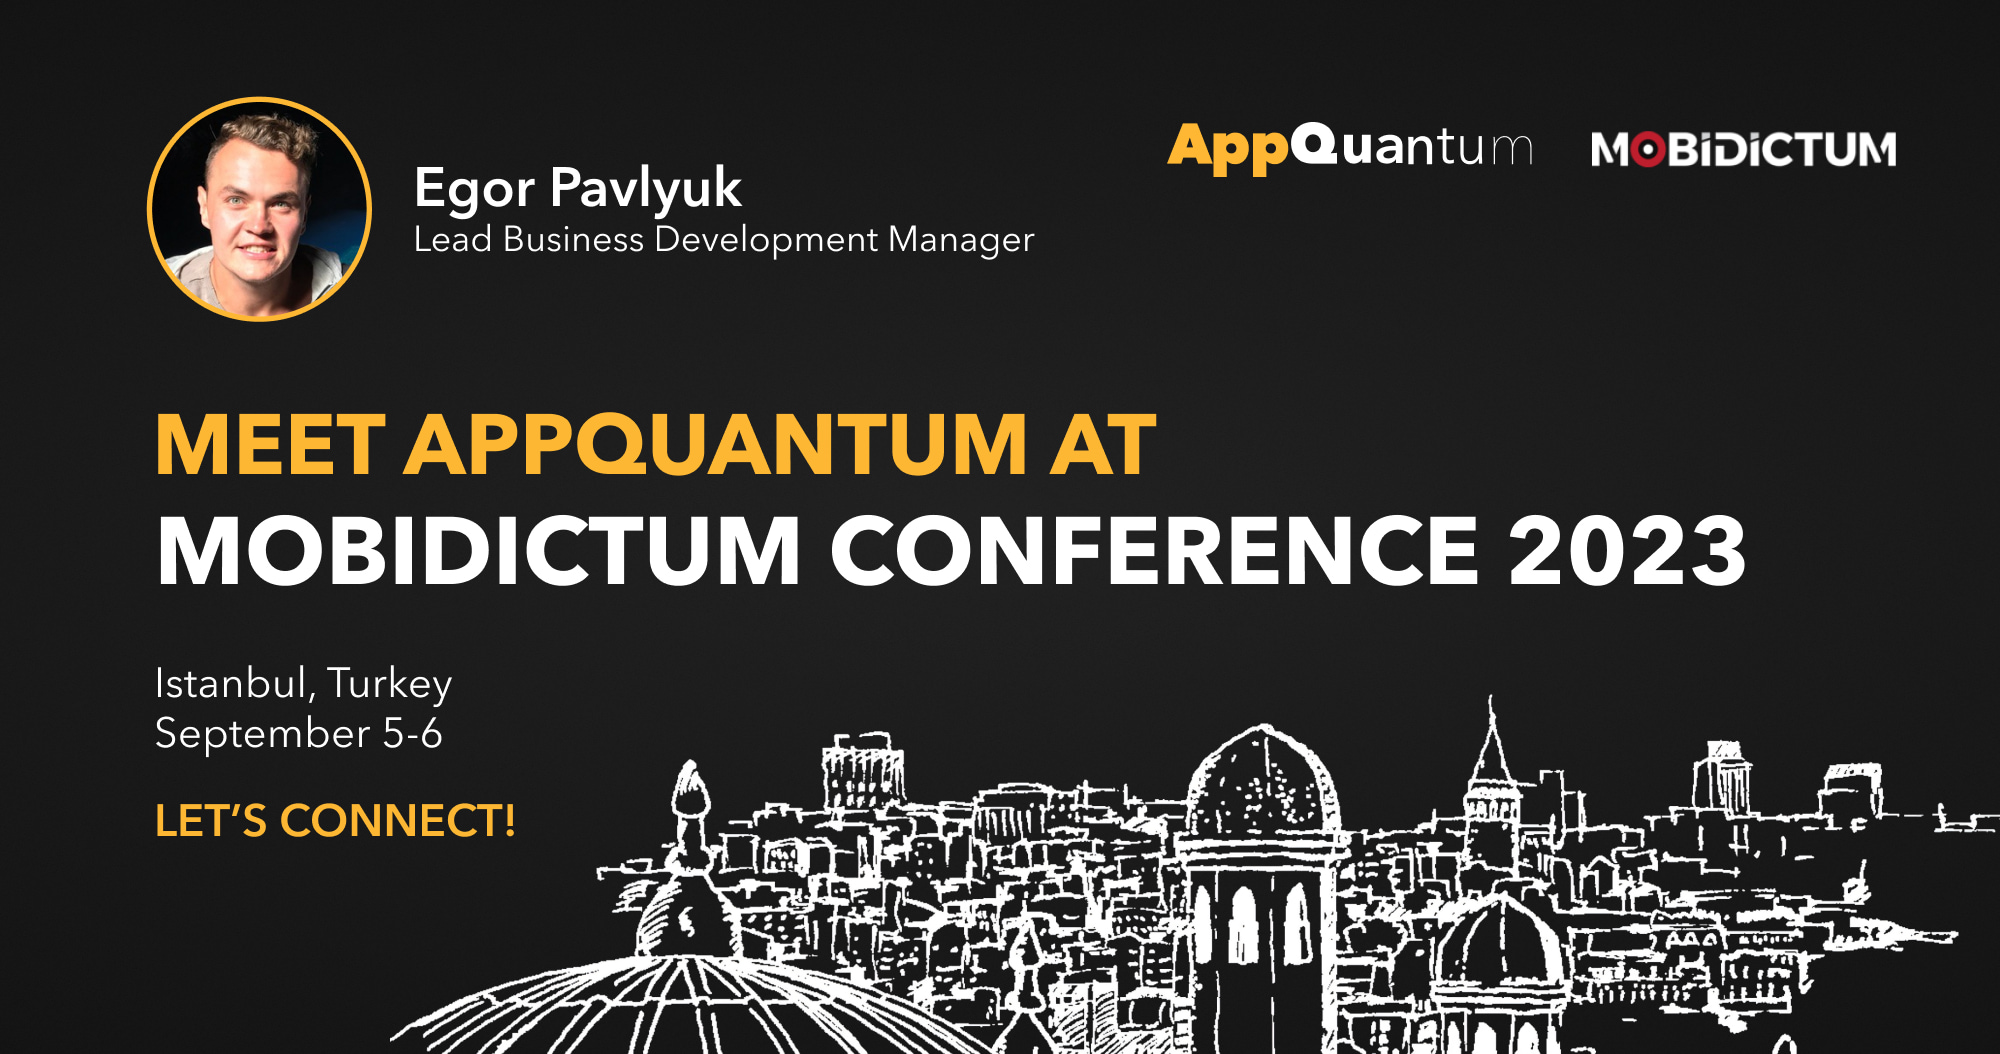 Meet AppQuantum at Mobidictum Conference 2023!